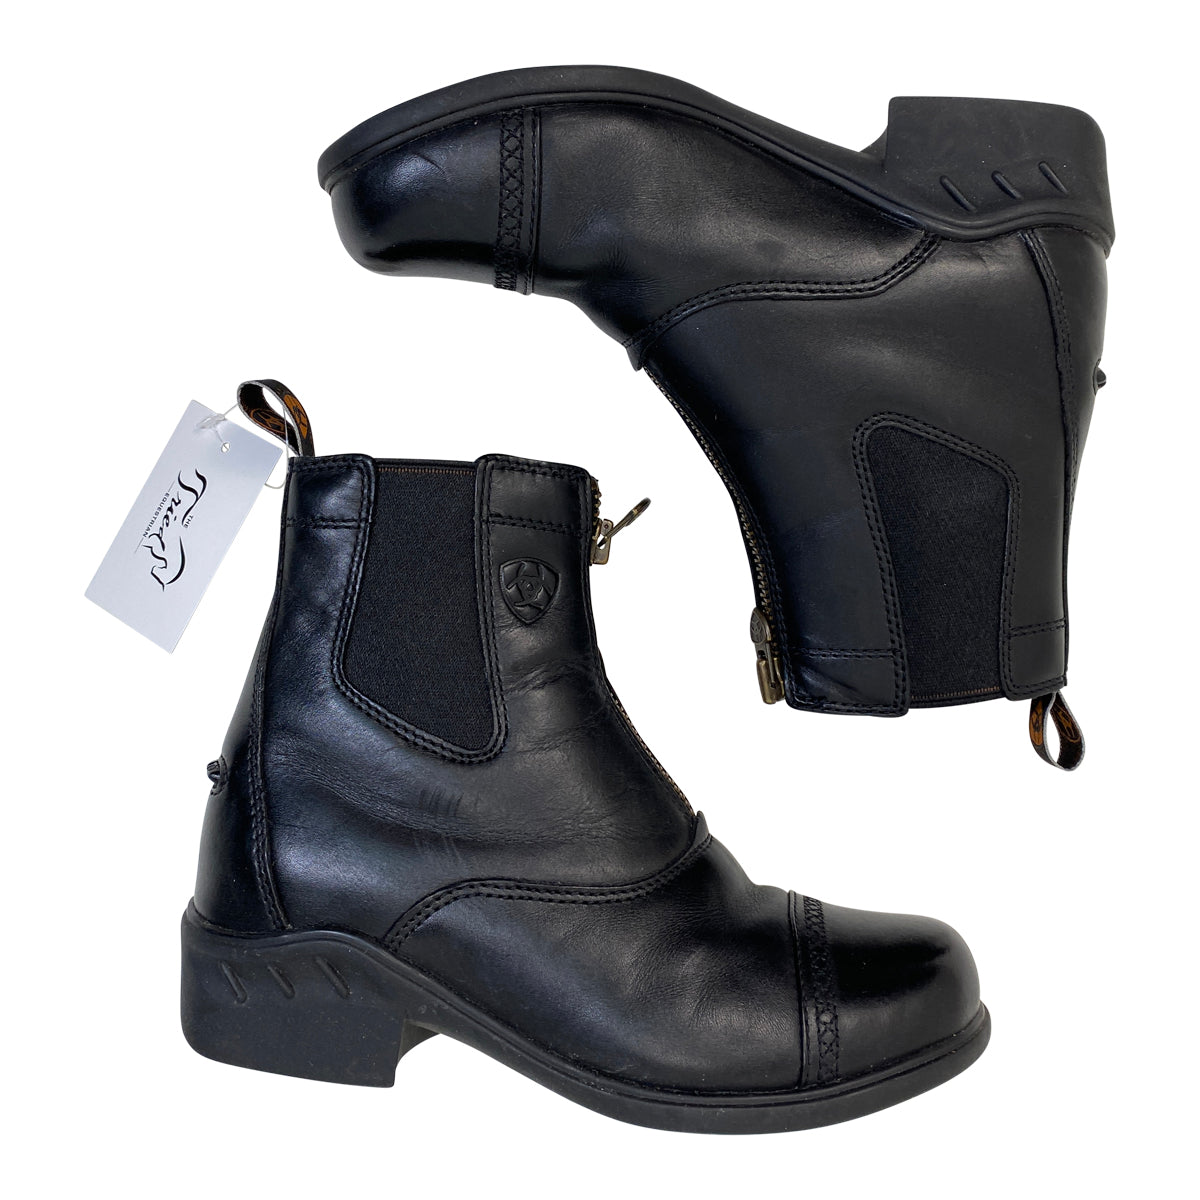 Ariat Heritage RT Zip Paddock Boots in Black